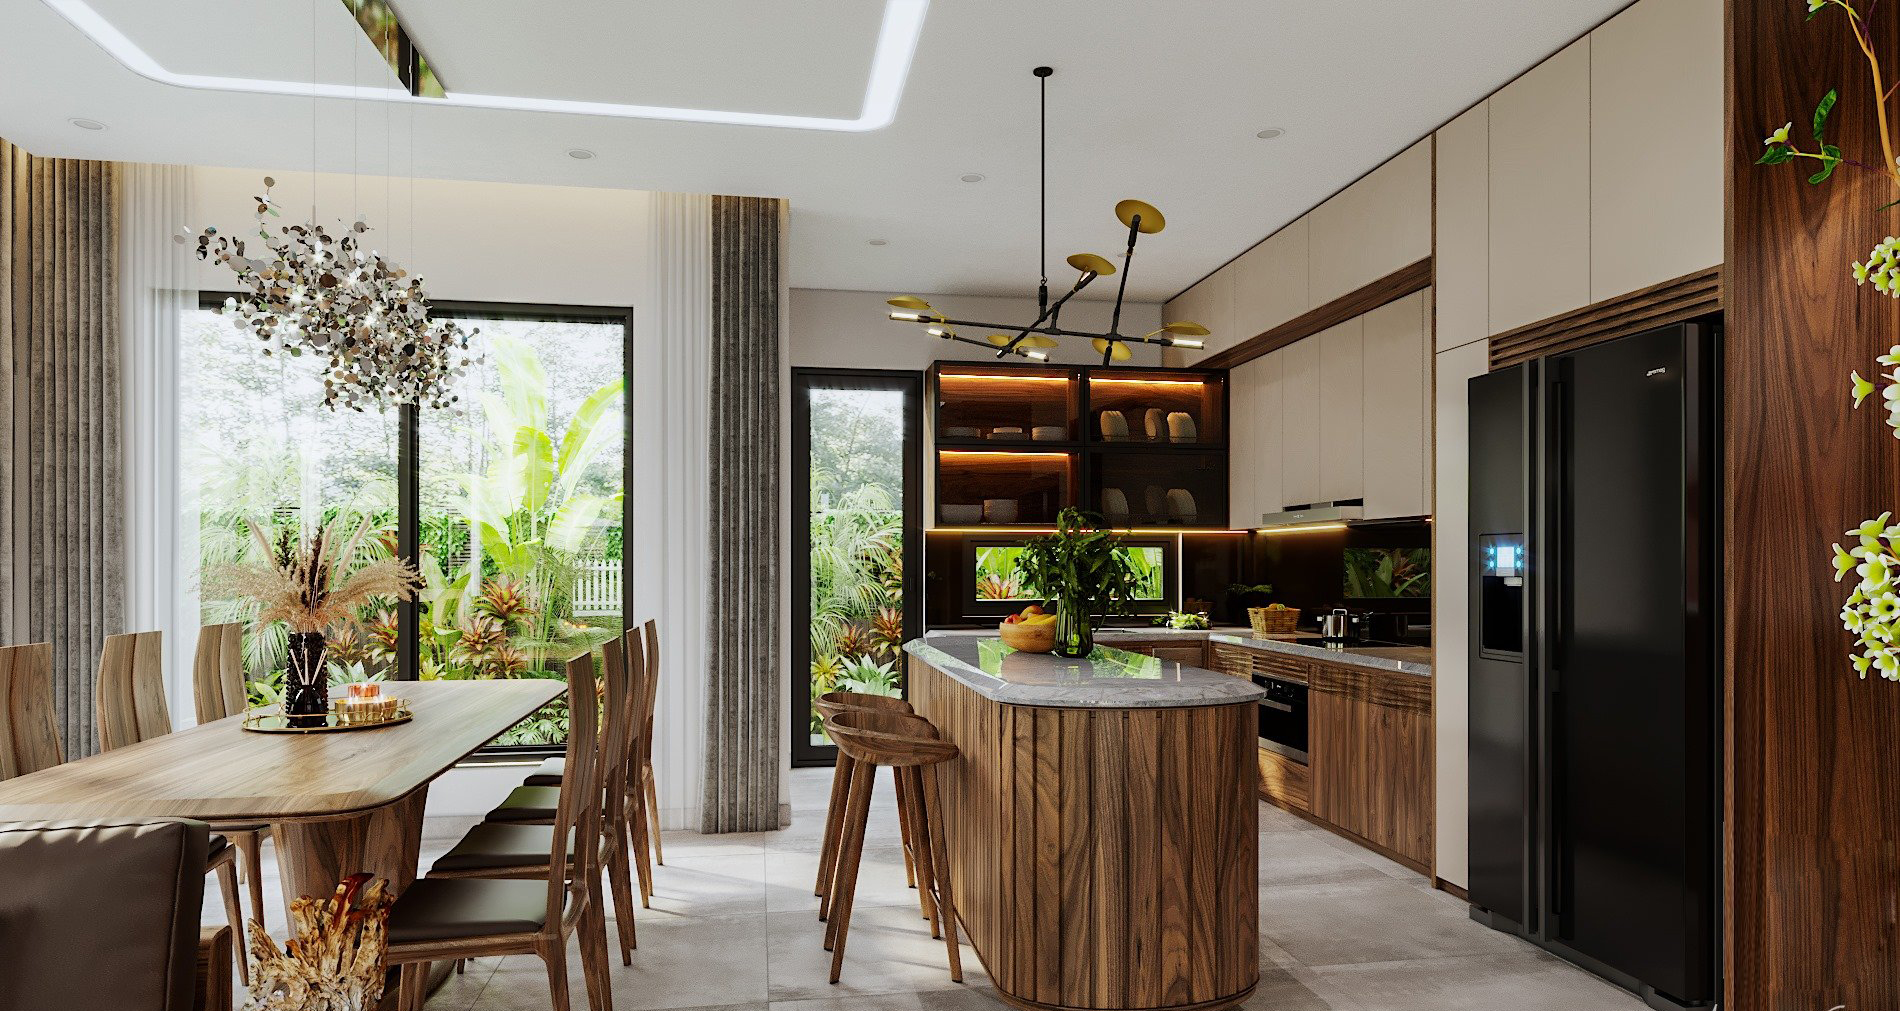 Không gian bếp hiện đại với tone màu nâu gỗ tự nhiên